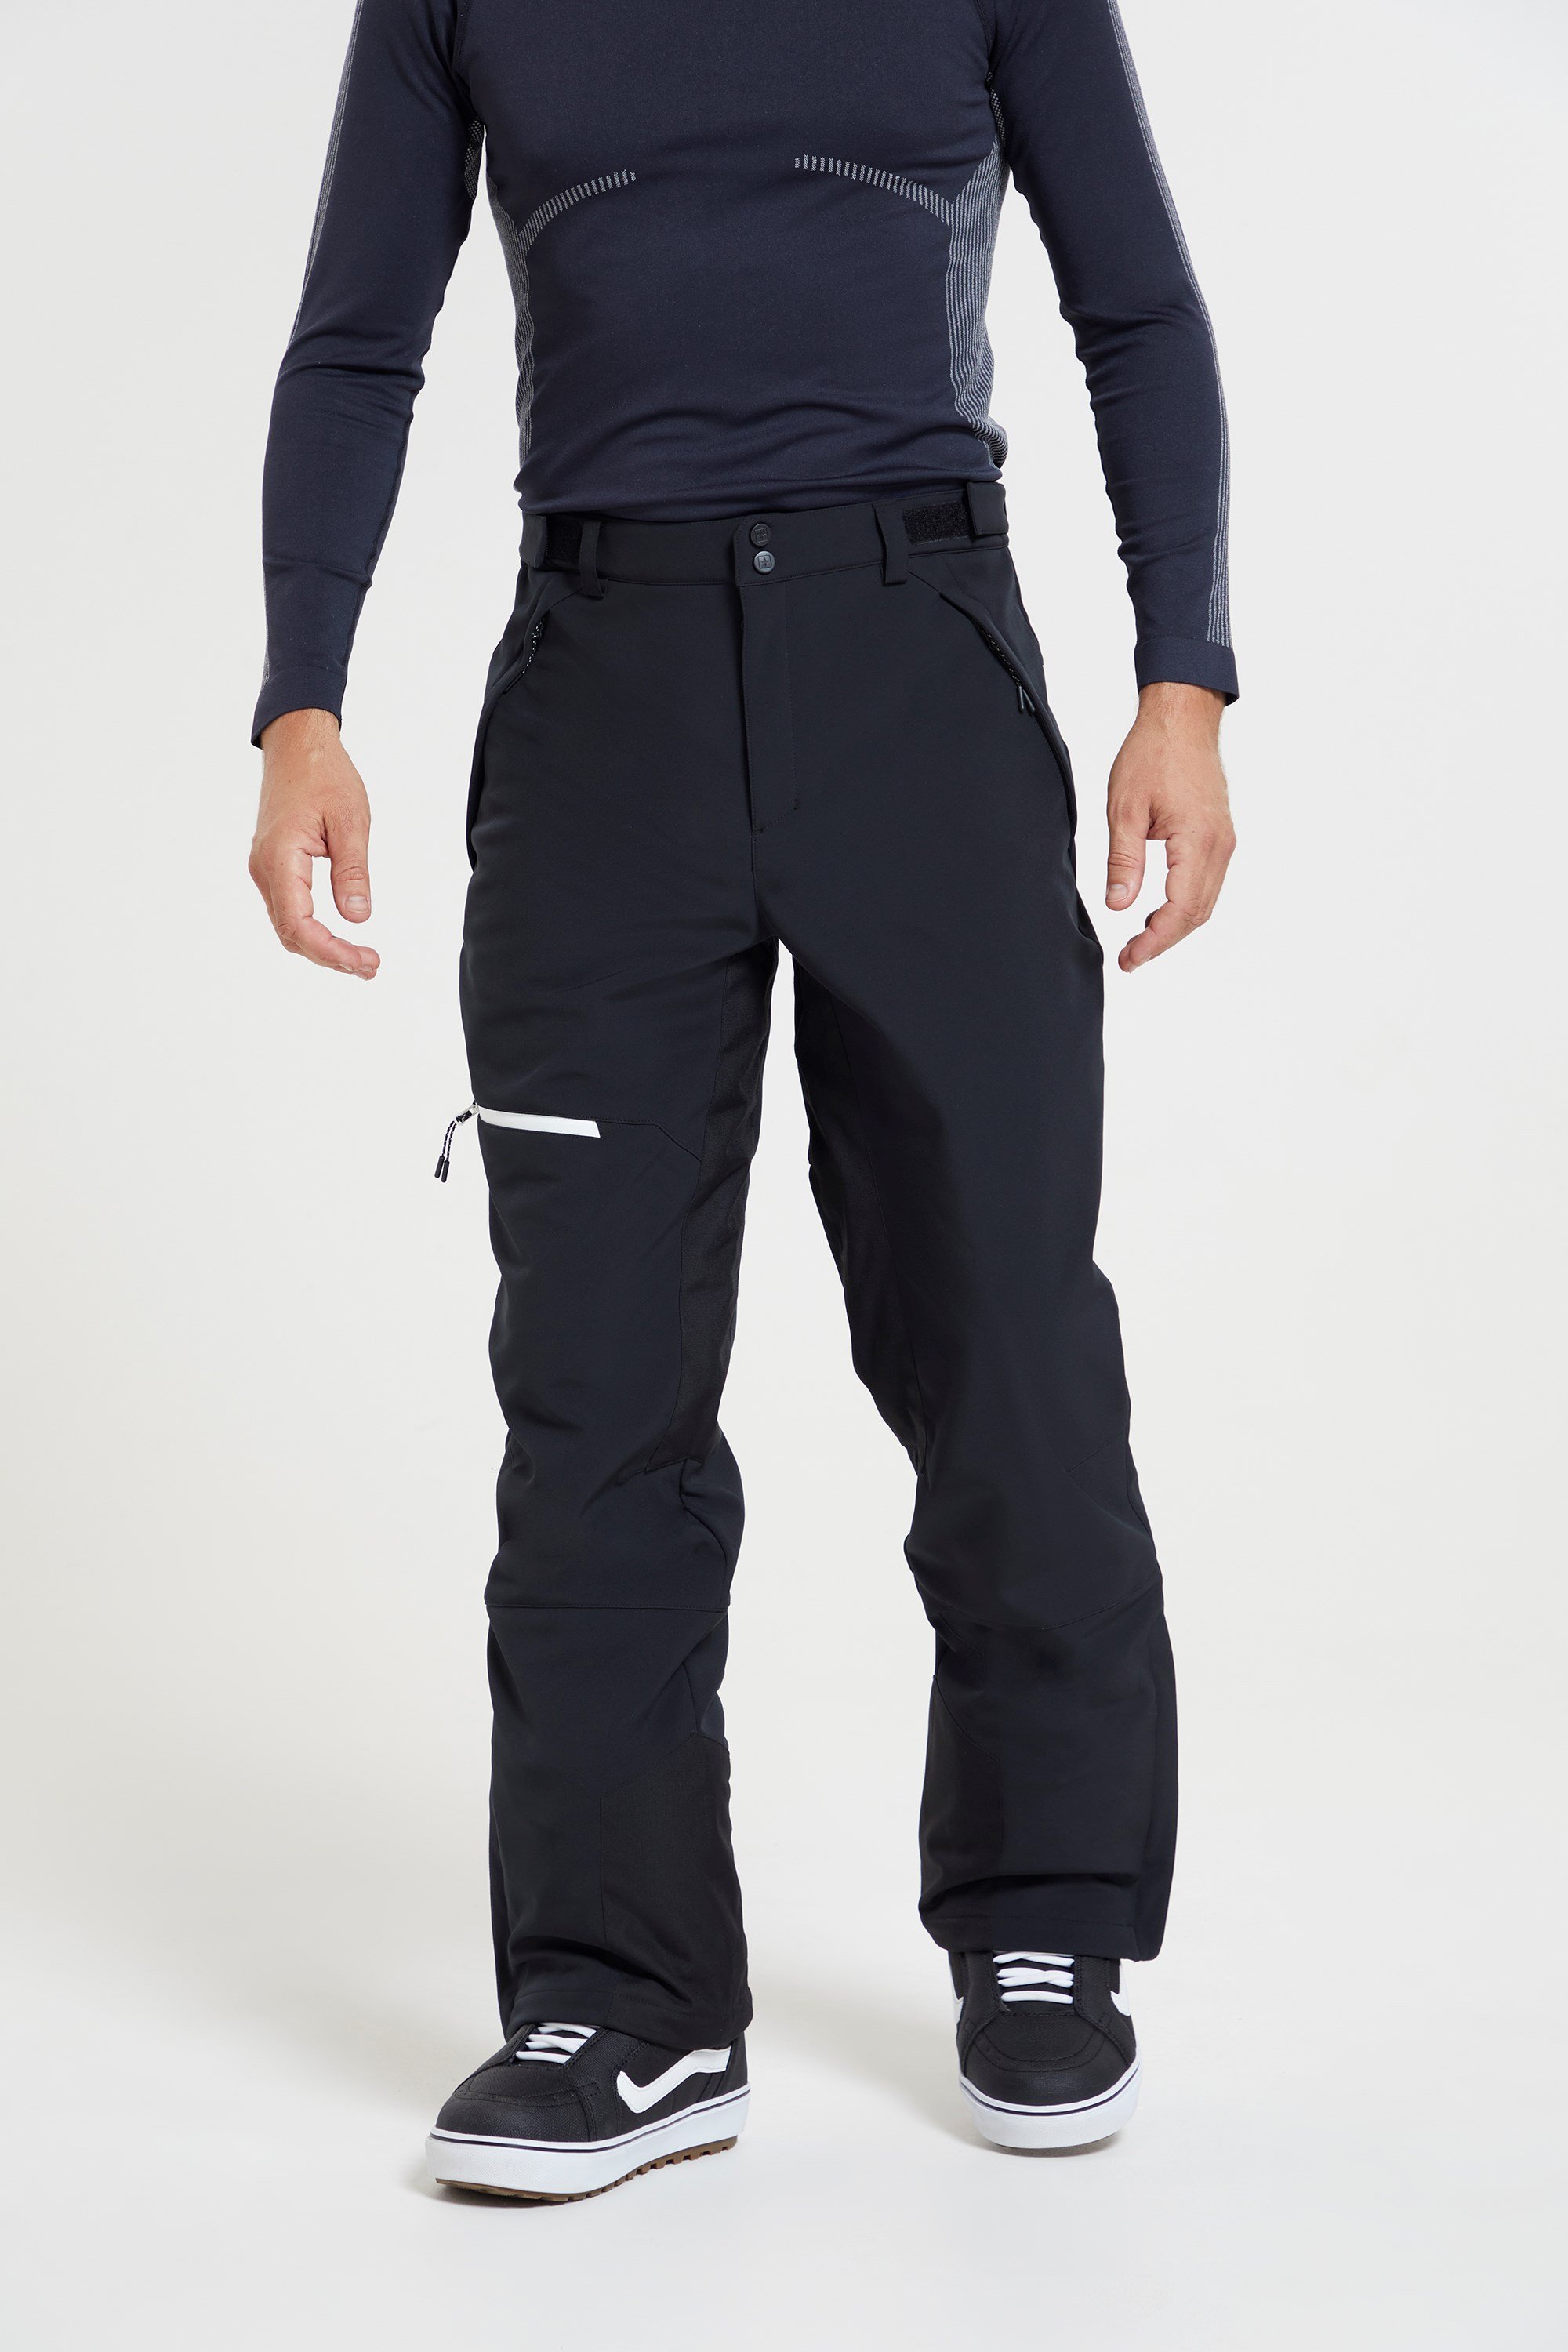 Men's black ski pants SLALOM | NORDBLANC